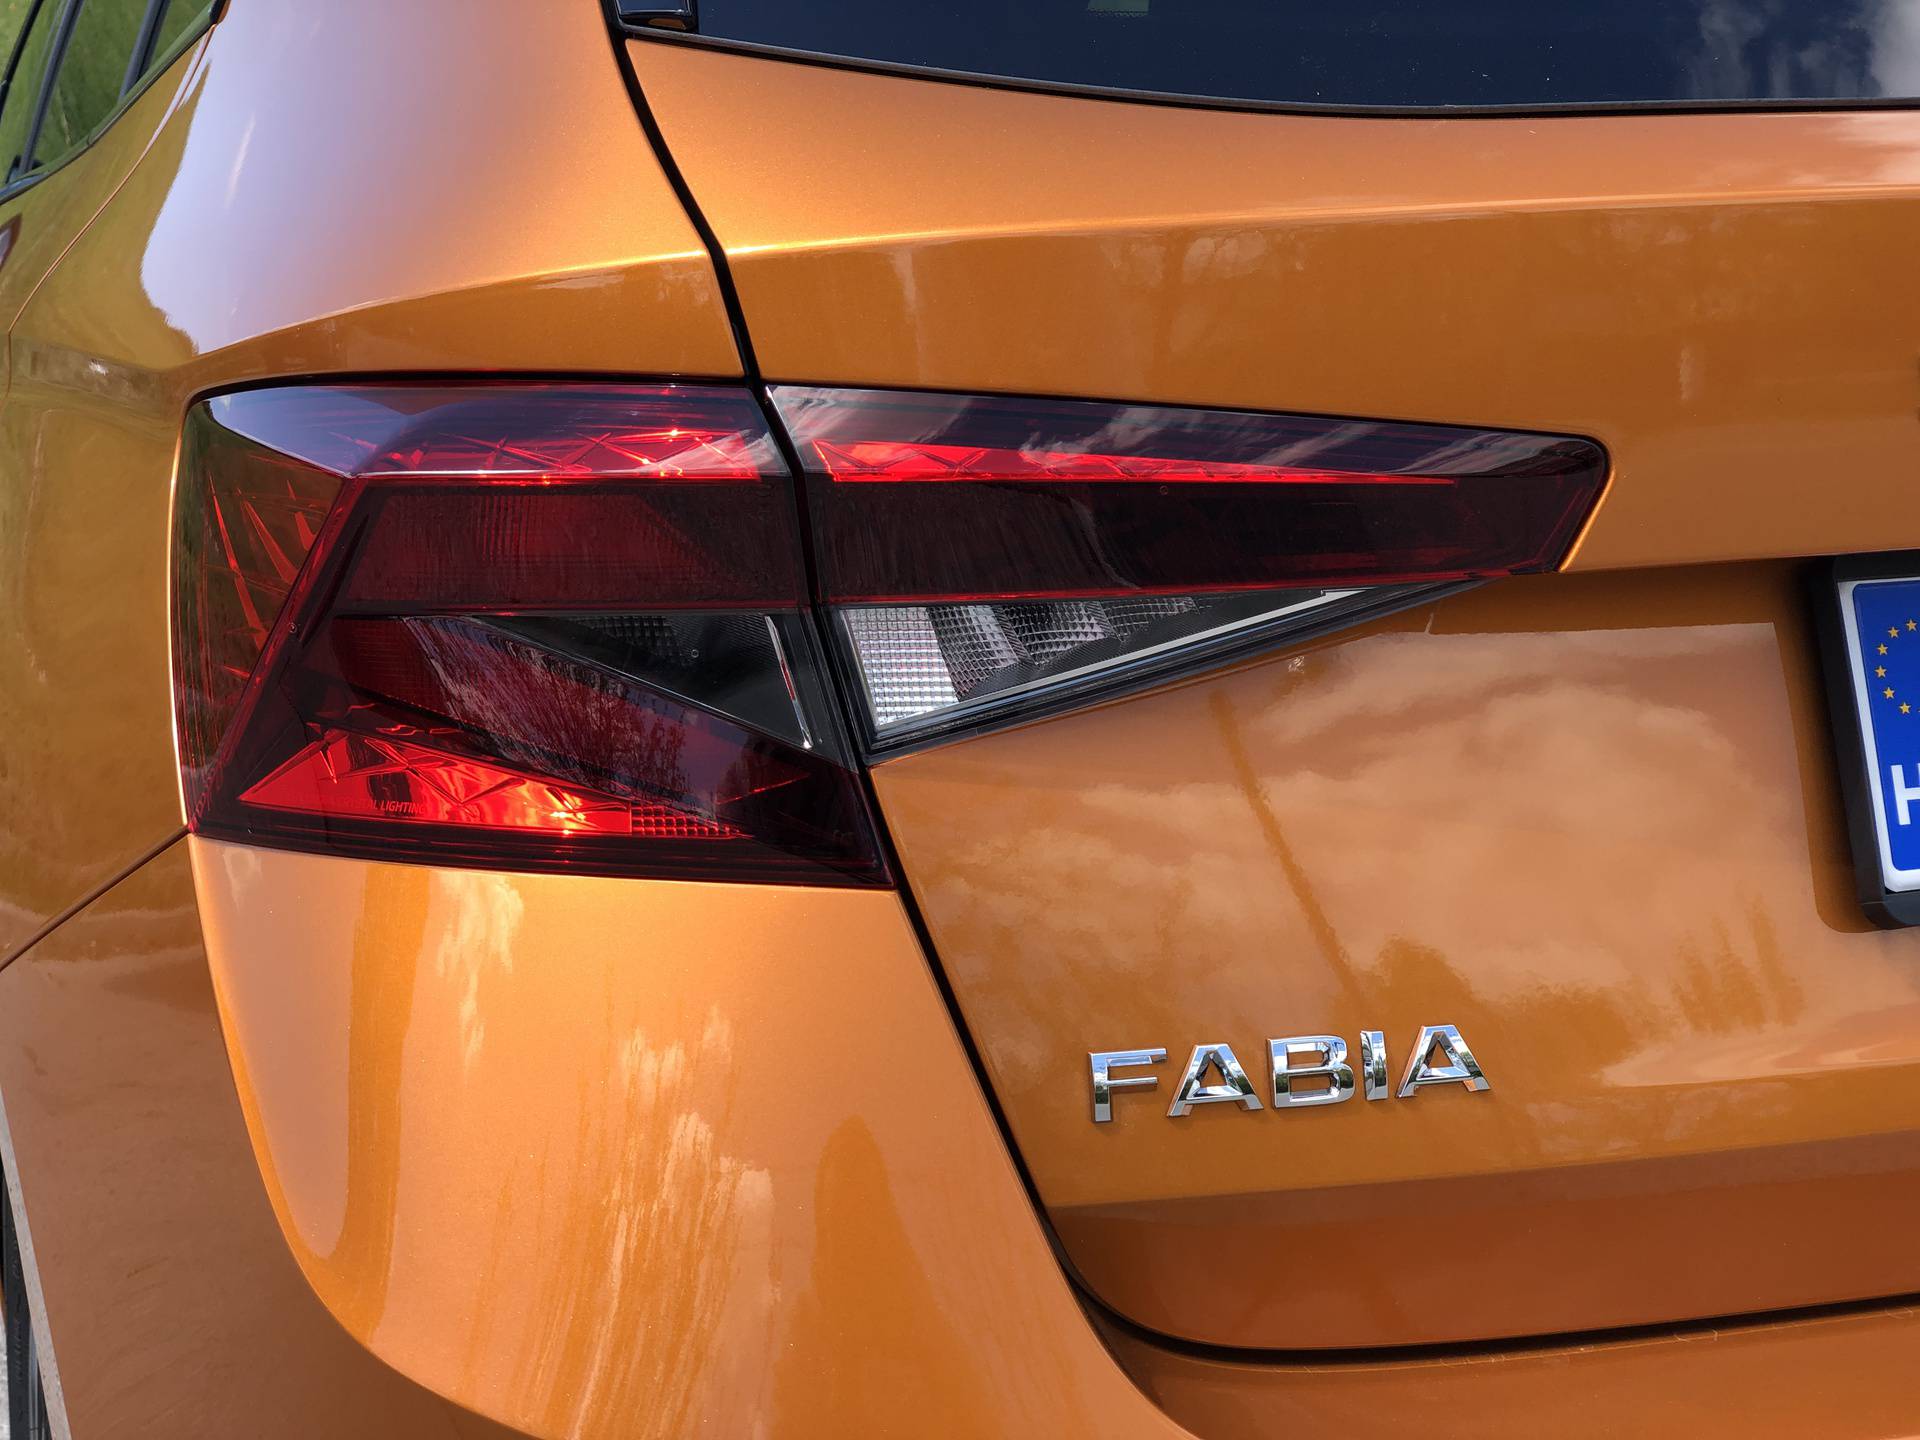 Nova Škoda Fabia je automobil s puno stila, na mnogo višoj razini nego što mnogi očekuju